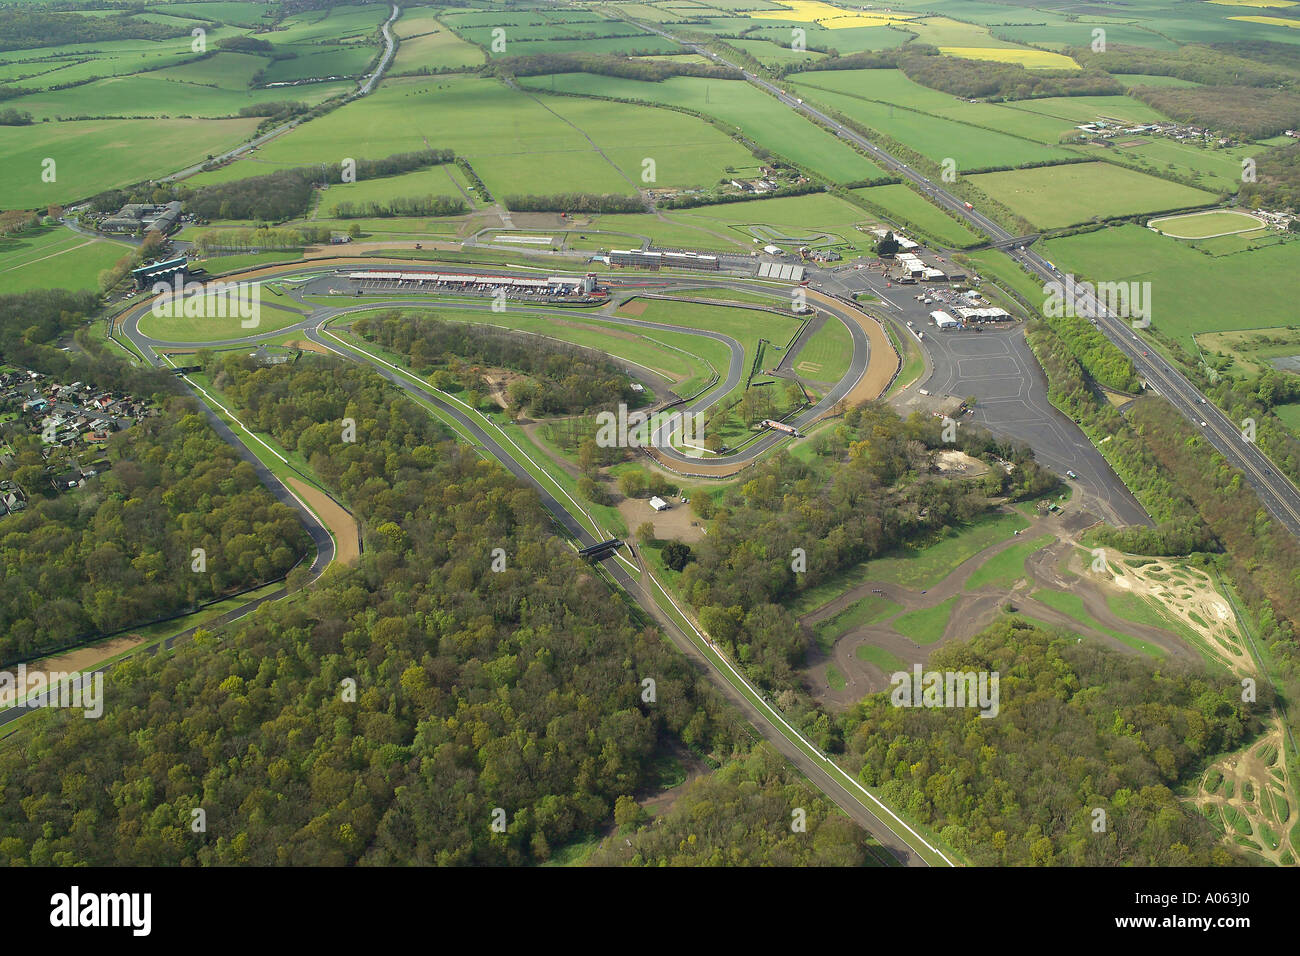 Vue aérienne du circuit automobile de Brands Hatch, dans le Kent, une fois à la maison de la Formule 1 Grand Prix de Grande-Bretagne Banque D'Images